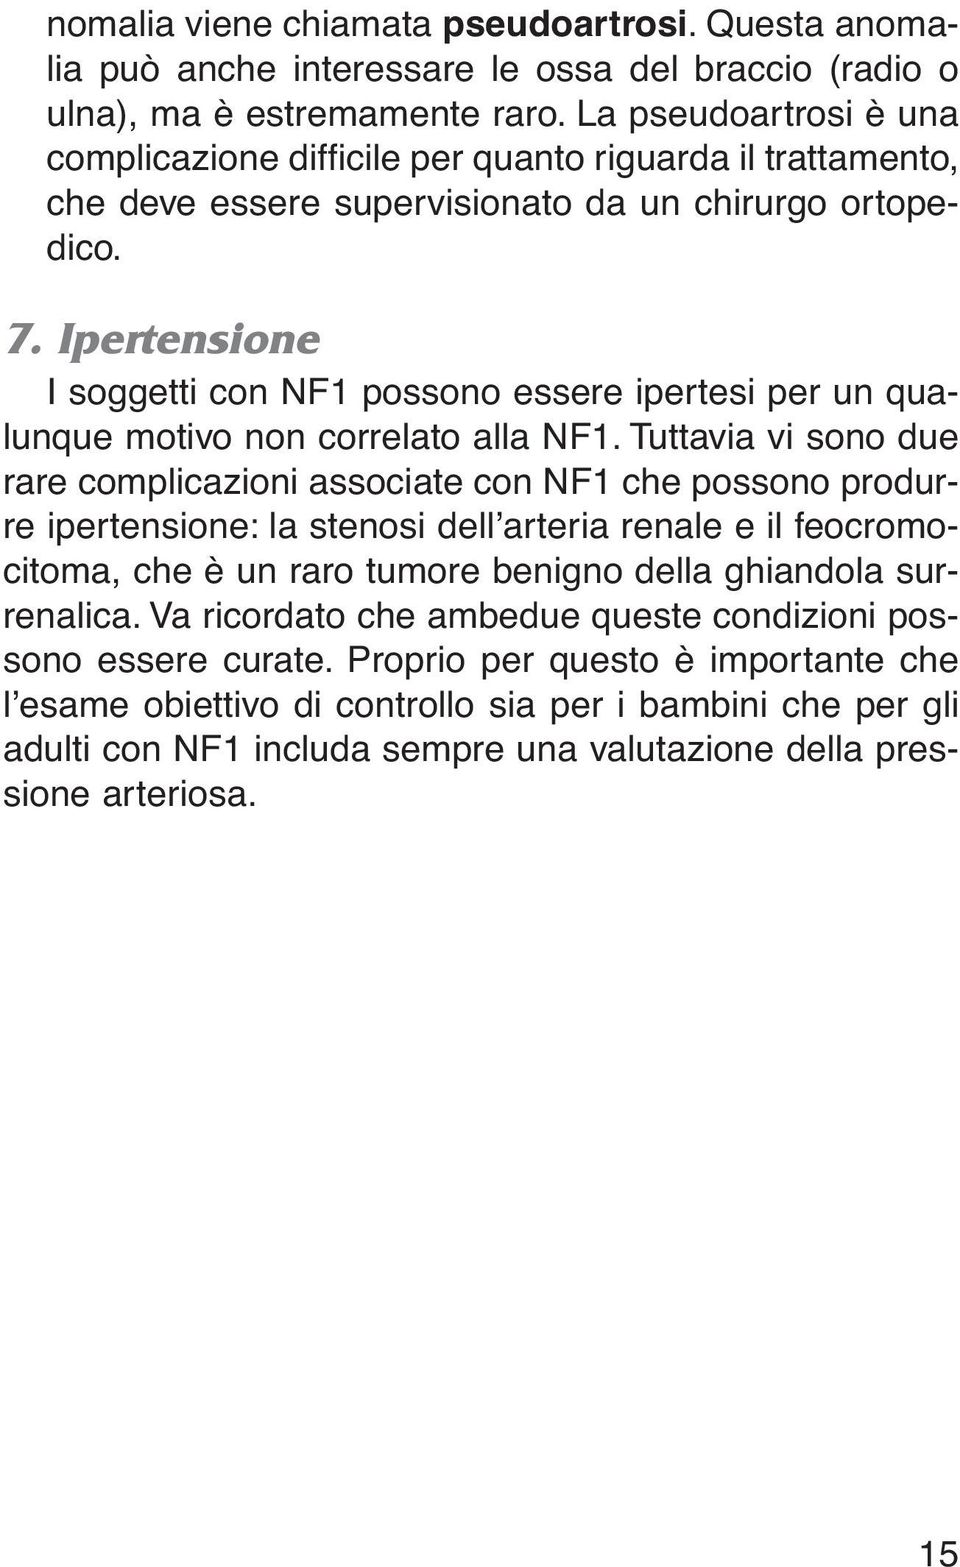 Ipertensione I soggetti con NF1 possono essere ipertesi per un qualunque motivo non correlato alla NF1.